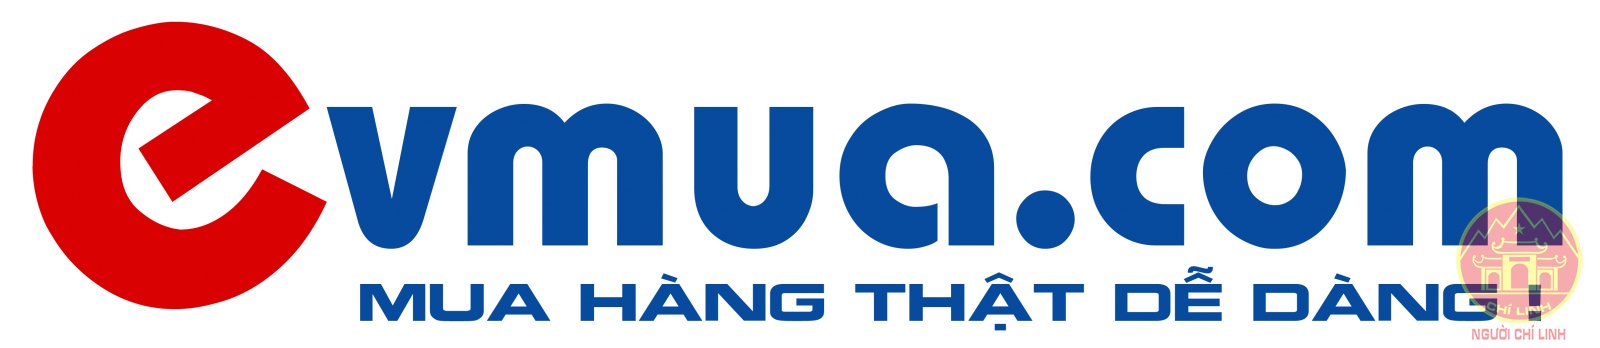 Evmua.com - Website thương mại điện tử đầu tiên tại Chí Linh